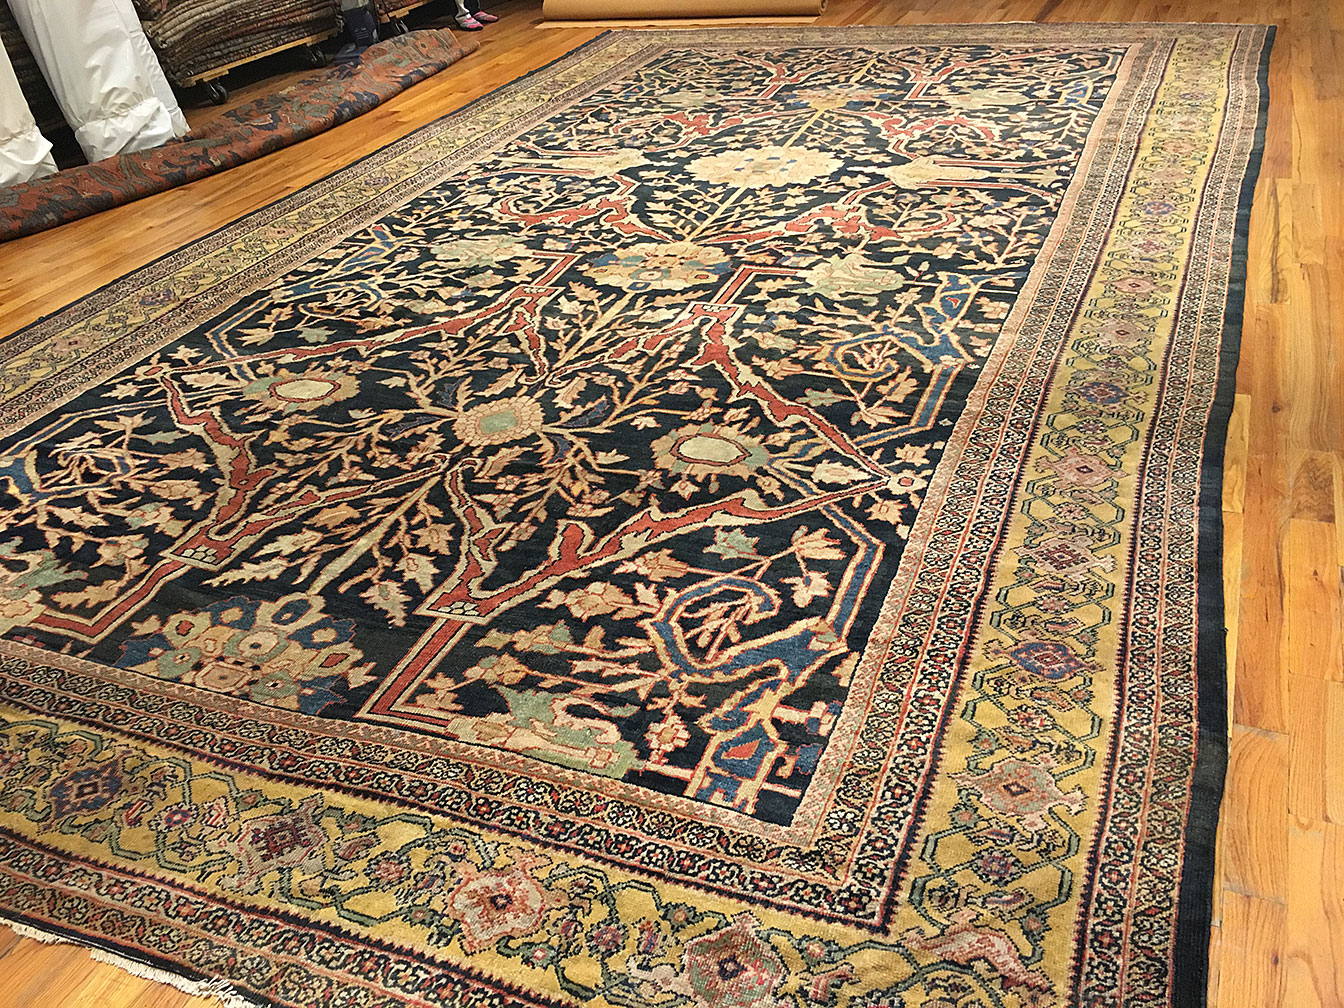 Antique sultan abad Carpet - # 52110